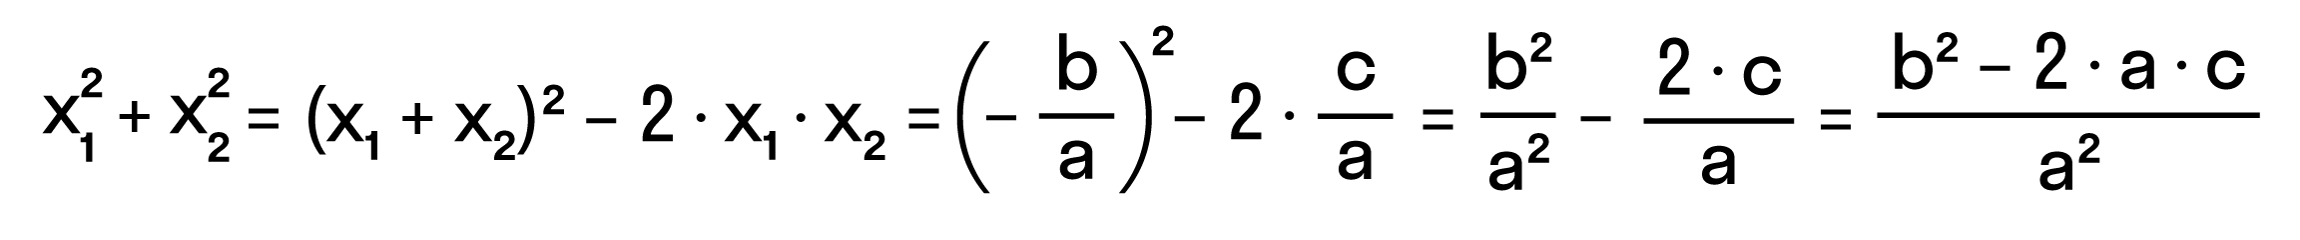 выражение суммы квадратов корней квадратного уравнения через его коэффициенты